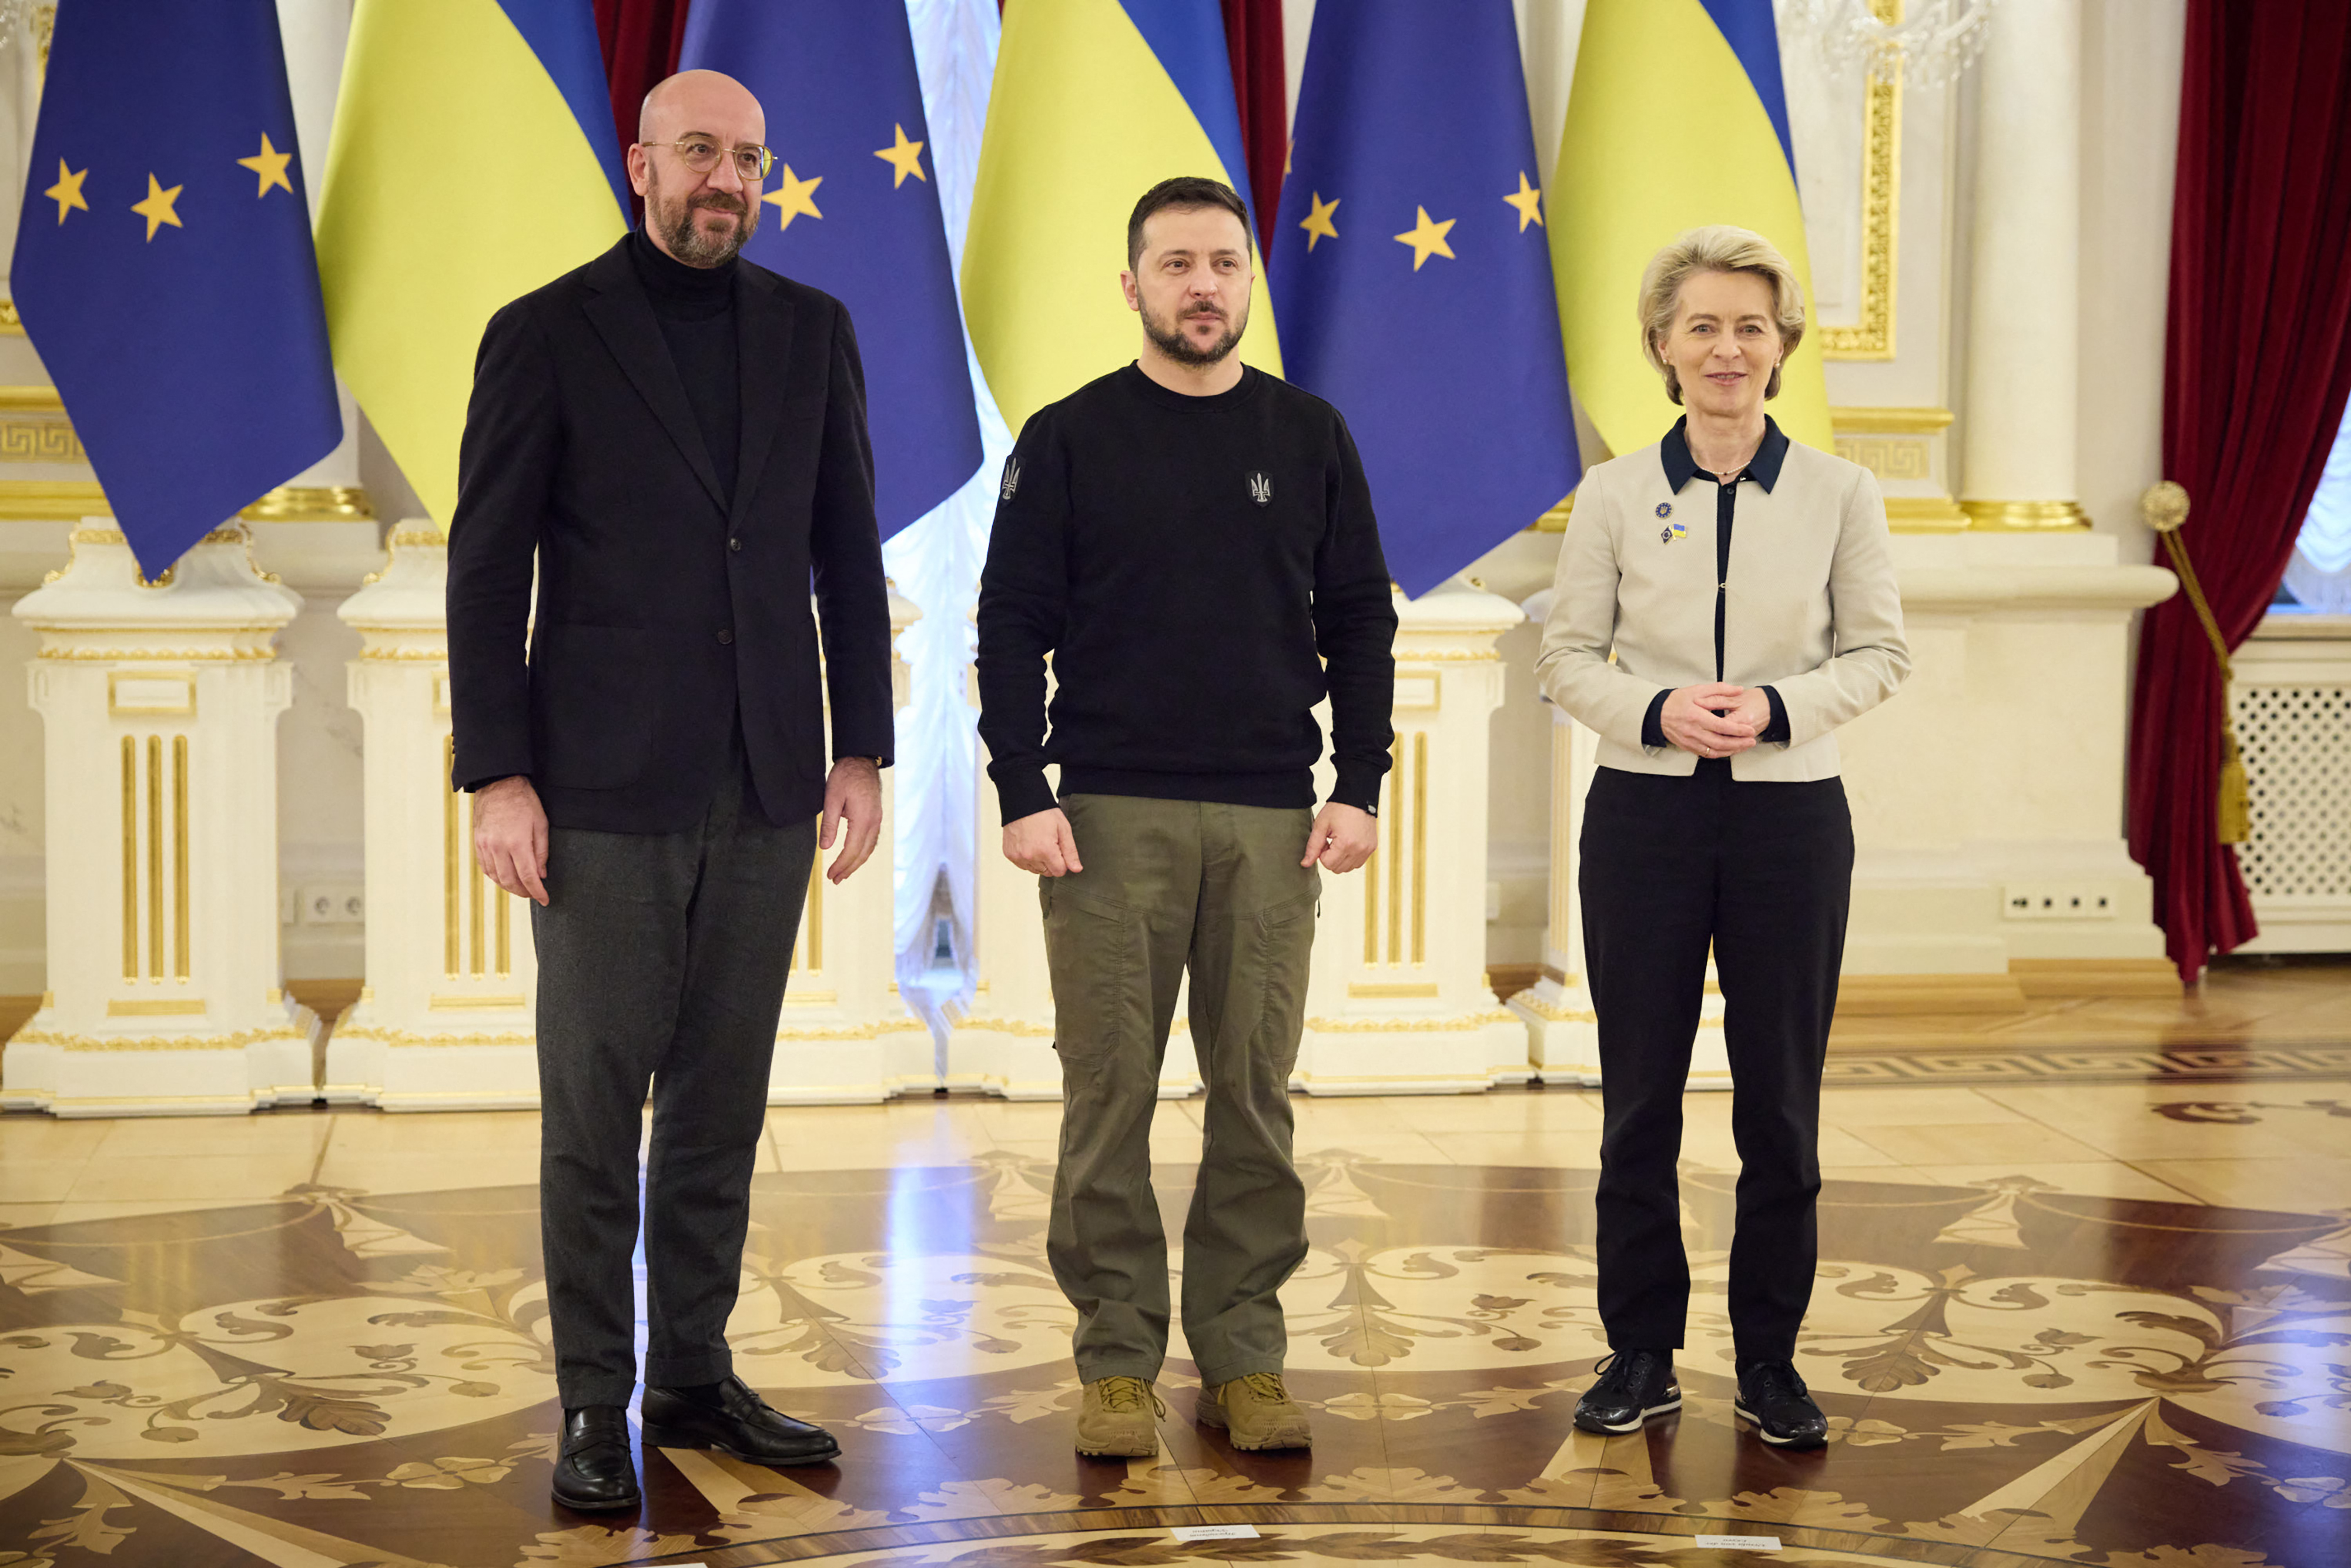 Nach Gipfel in Kiew - Barley dämpft Hoffnungen auf baldigen EU-Beitritt der Ukraine